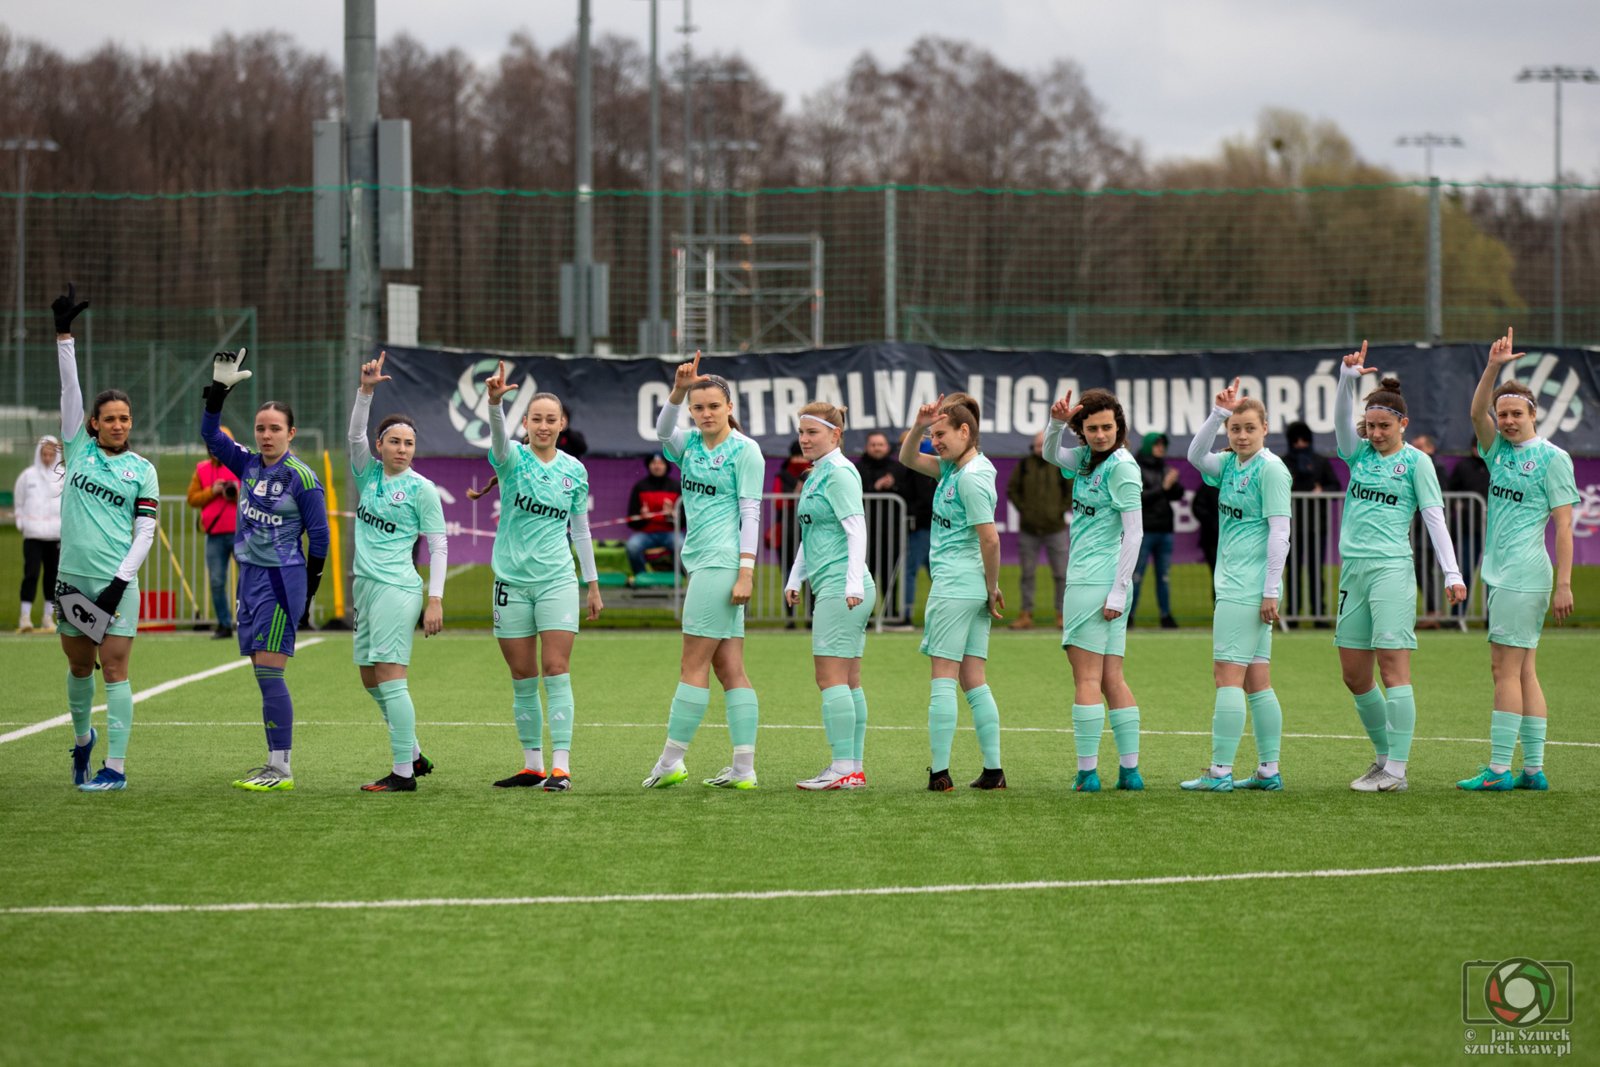 Legia Ladies - Skra Częstochowa 3:1 (1:1)